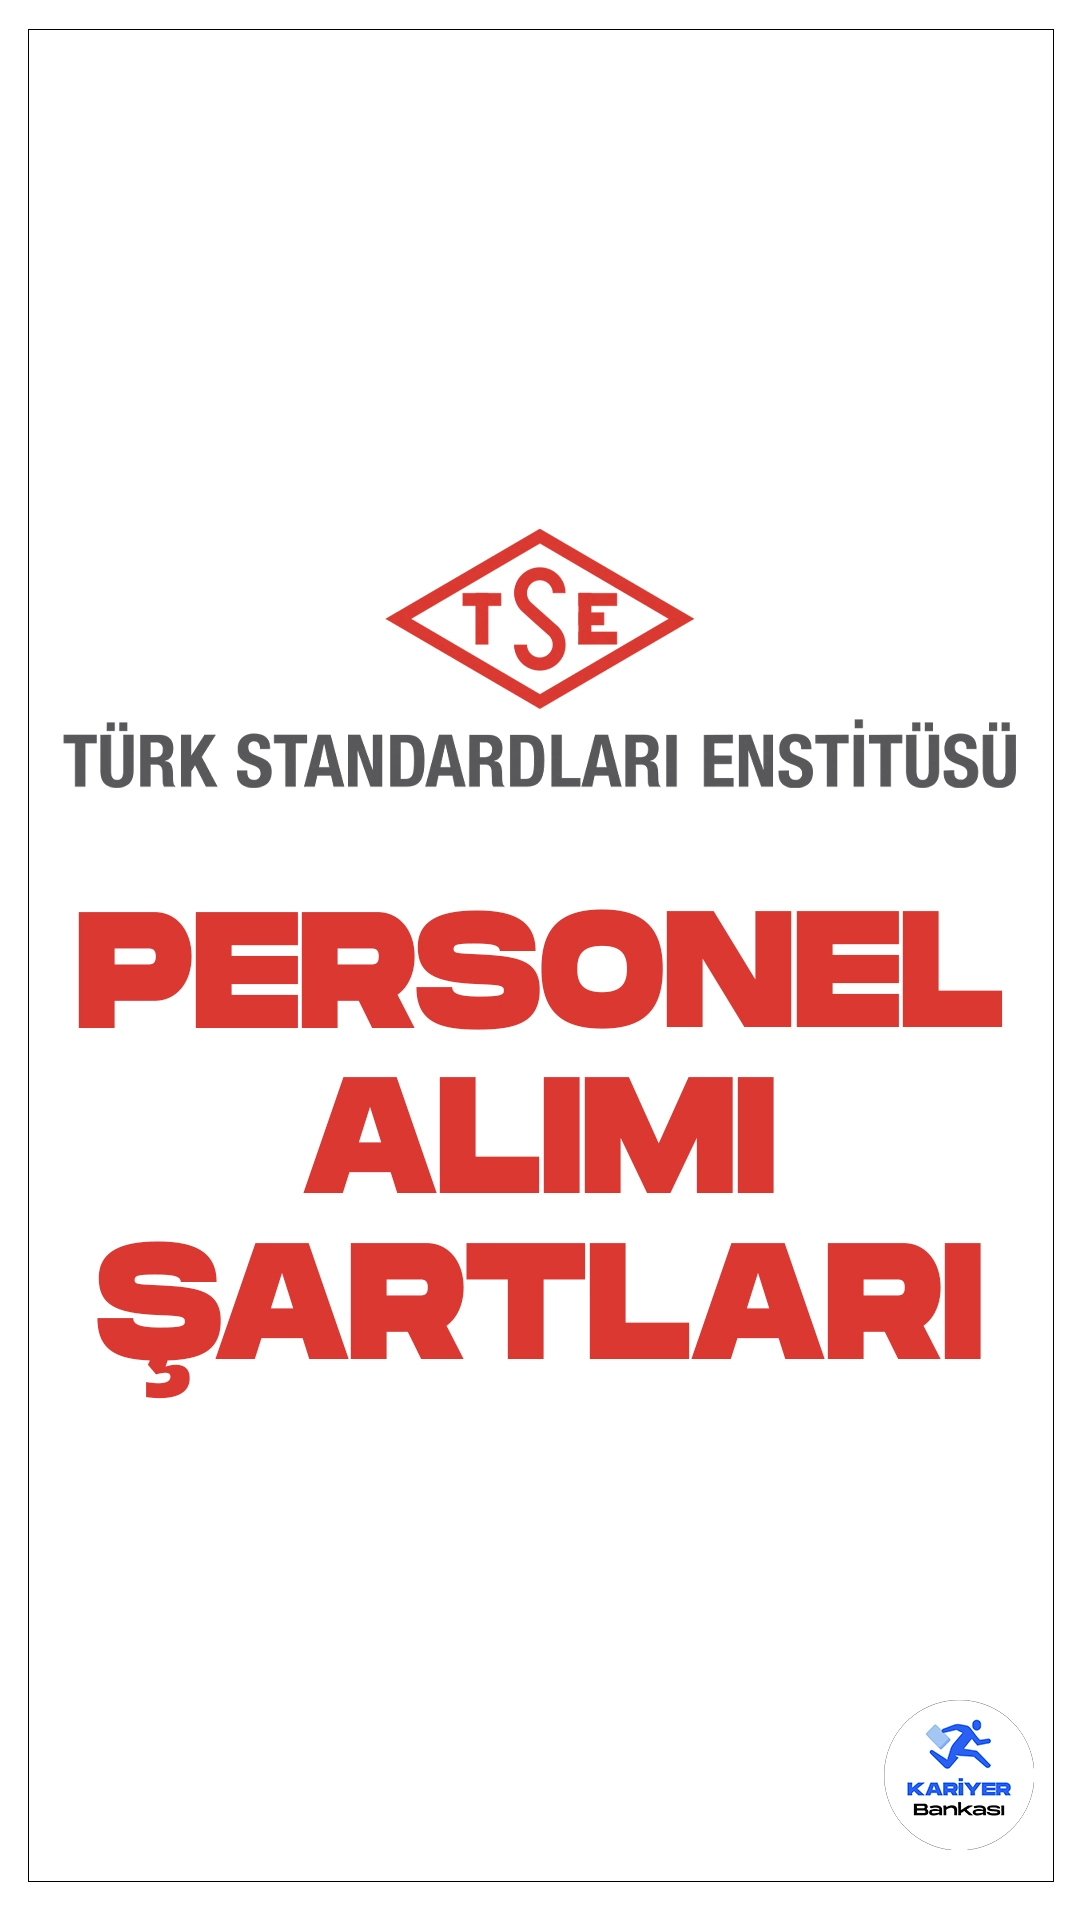 Türk Standartları Enstitüsü (TSE) personel alımı başvuruları sürüyor. Başvuru şartları ve başvuru sayfasına dair tüm detaylar Kariyerbankasi.net'in bu haberinde.